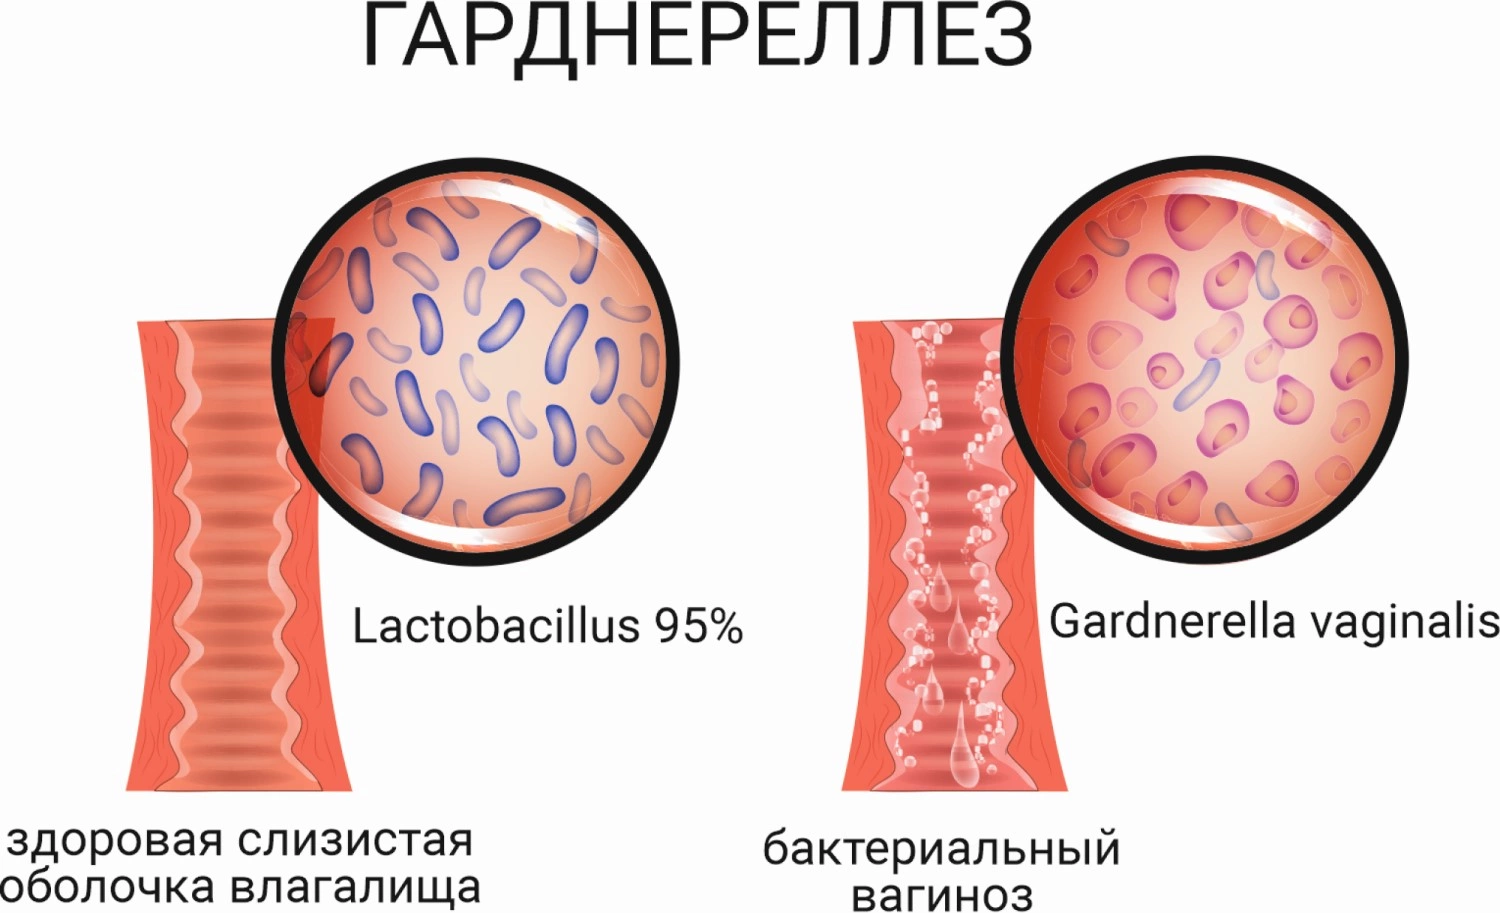 Гарднерелла у женщин и мужчин, лечение гарднереллеза, откуда он берется, симптомы